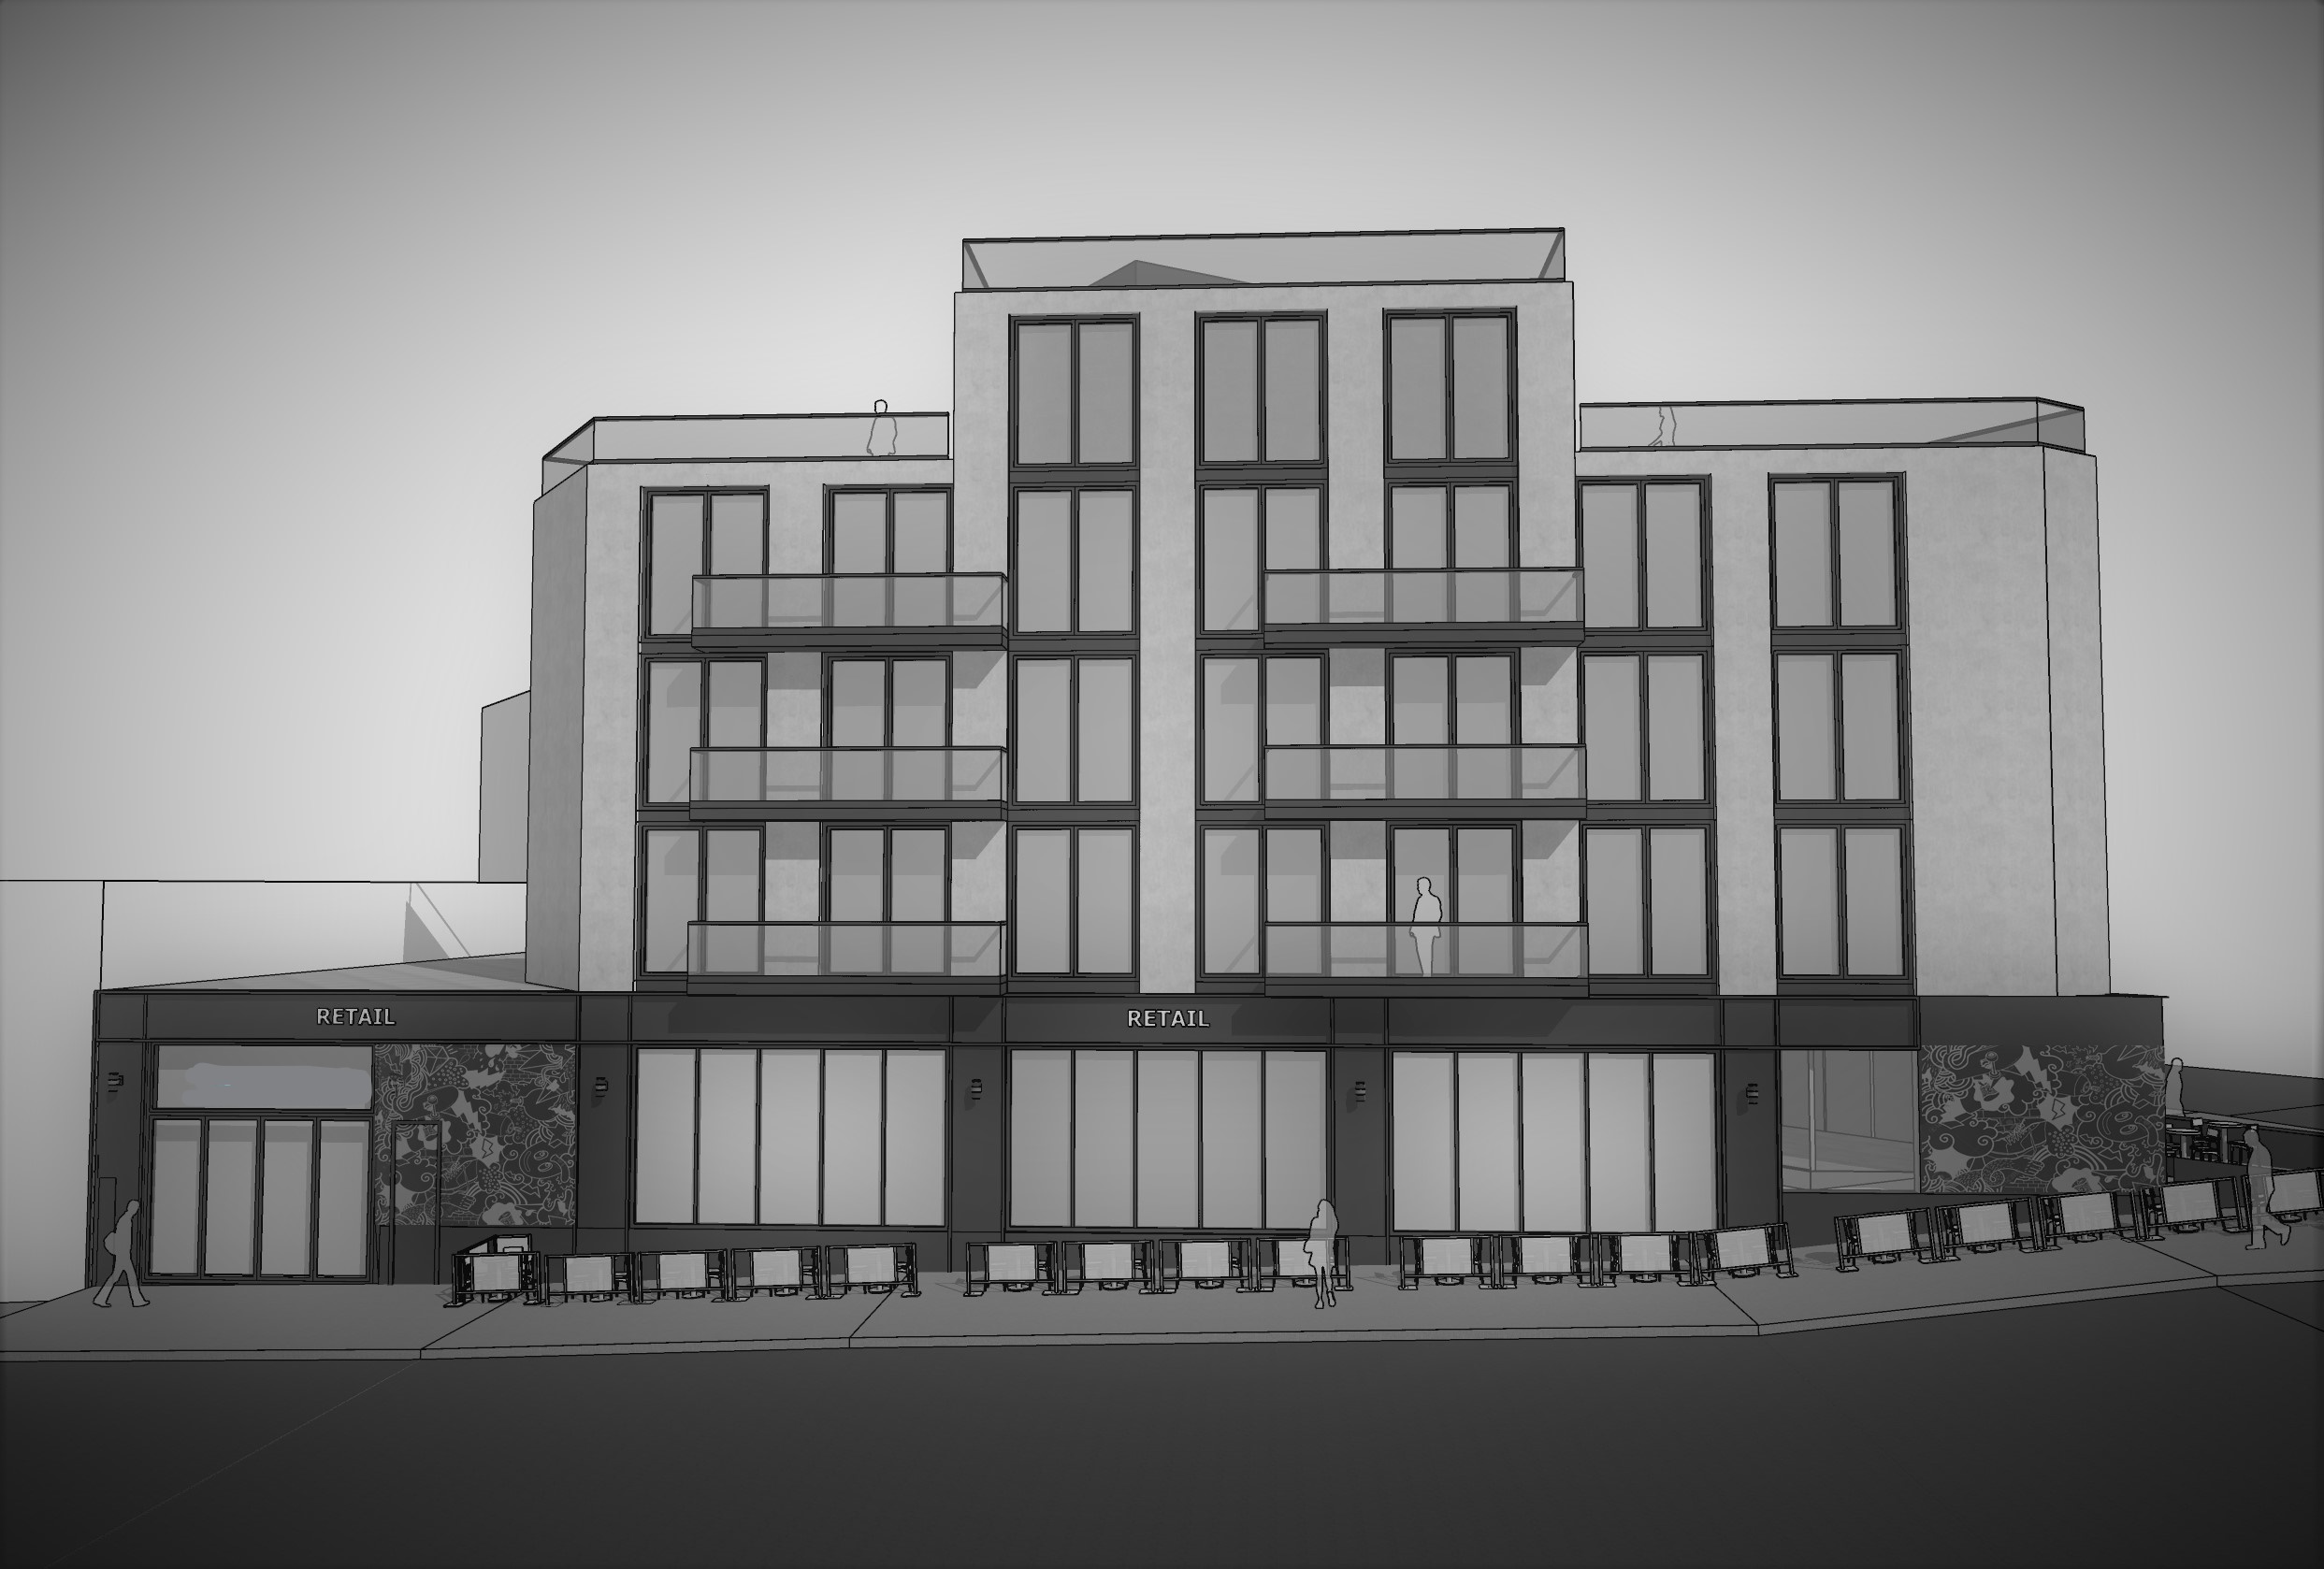 12-22 Astoria Boulevard, rendering courtesy AKI Development